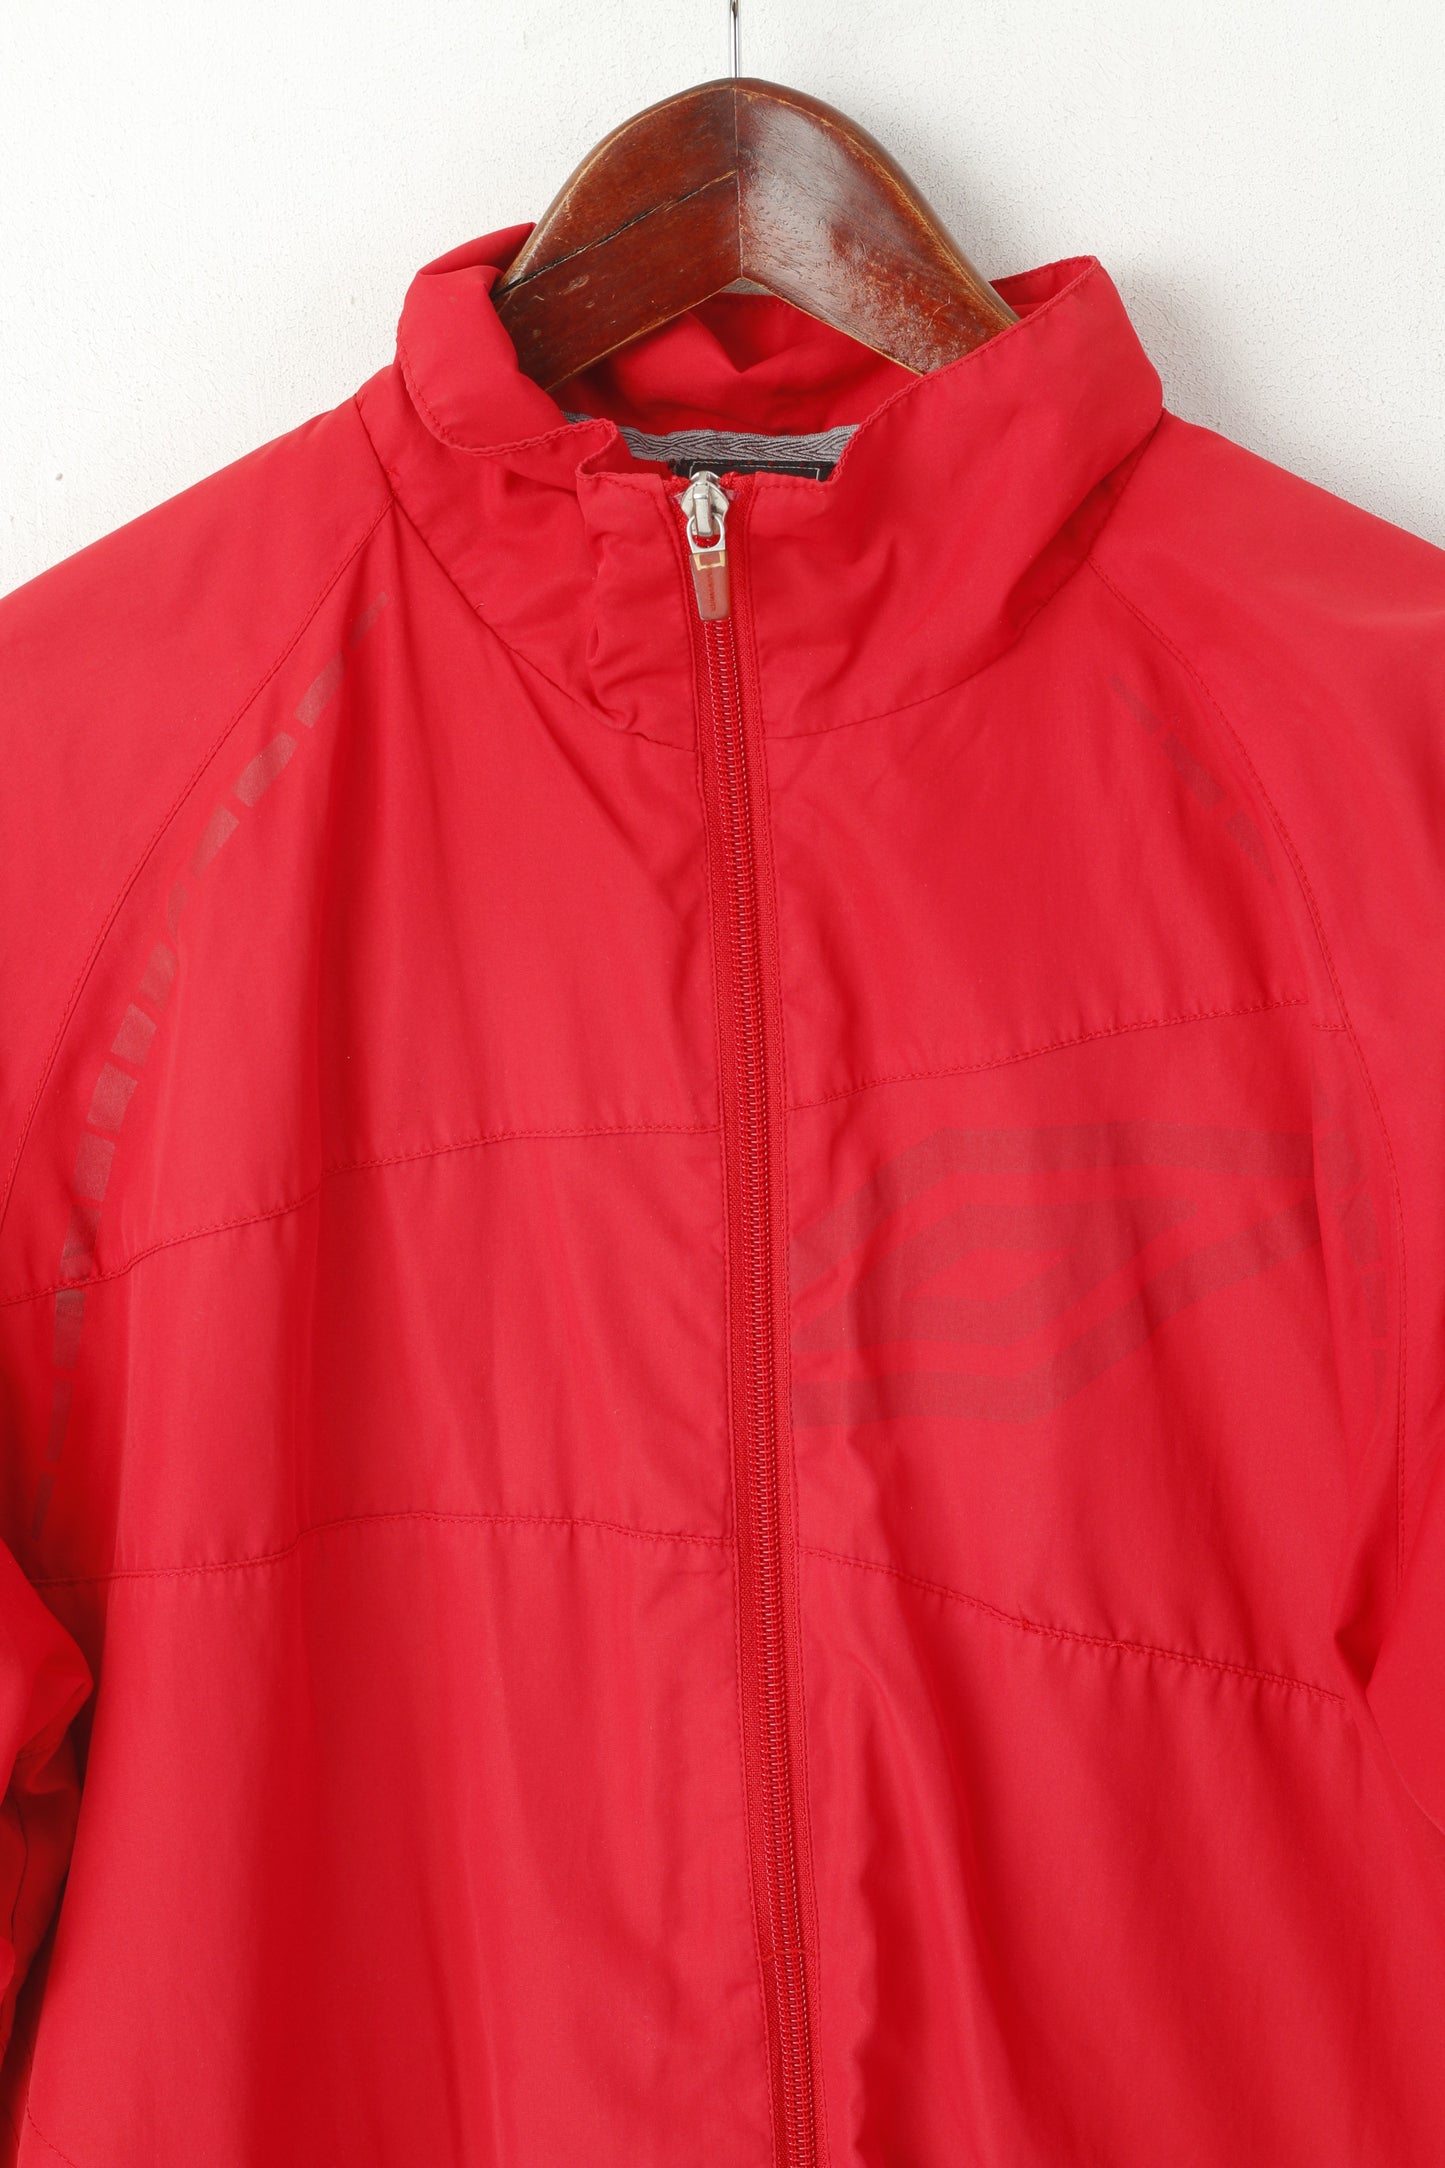 Umbro Men S Jacket Red Vintage Full Zip Sportswear Reflective Lightweight Top